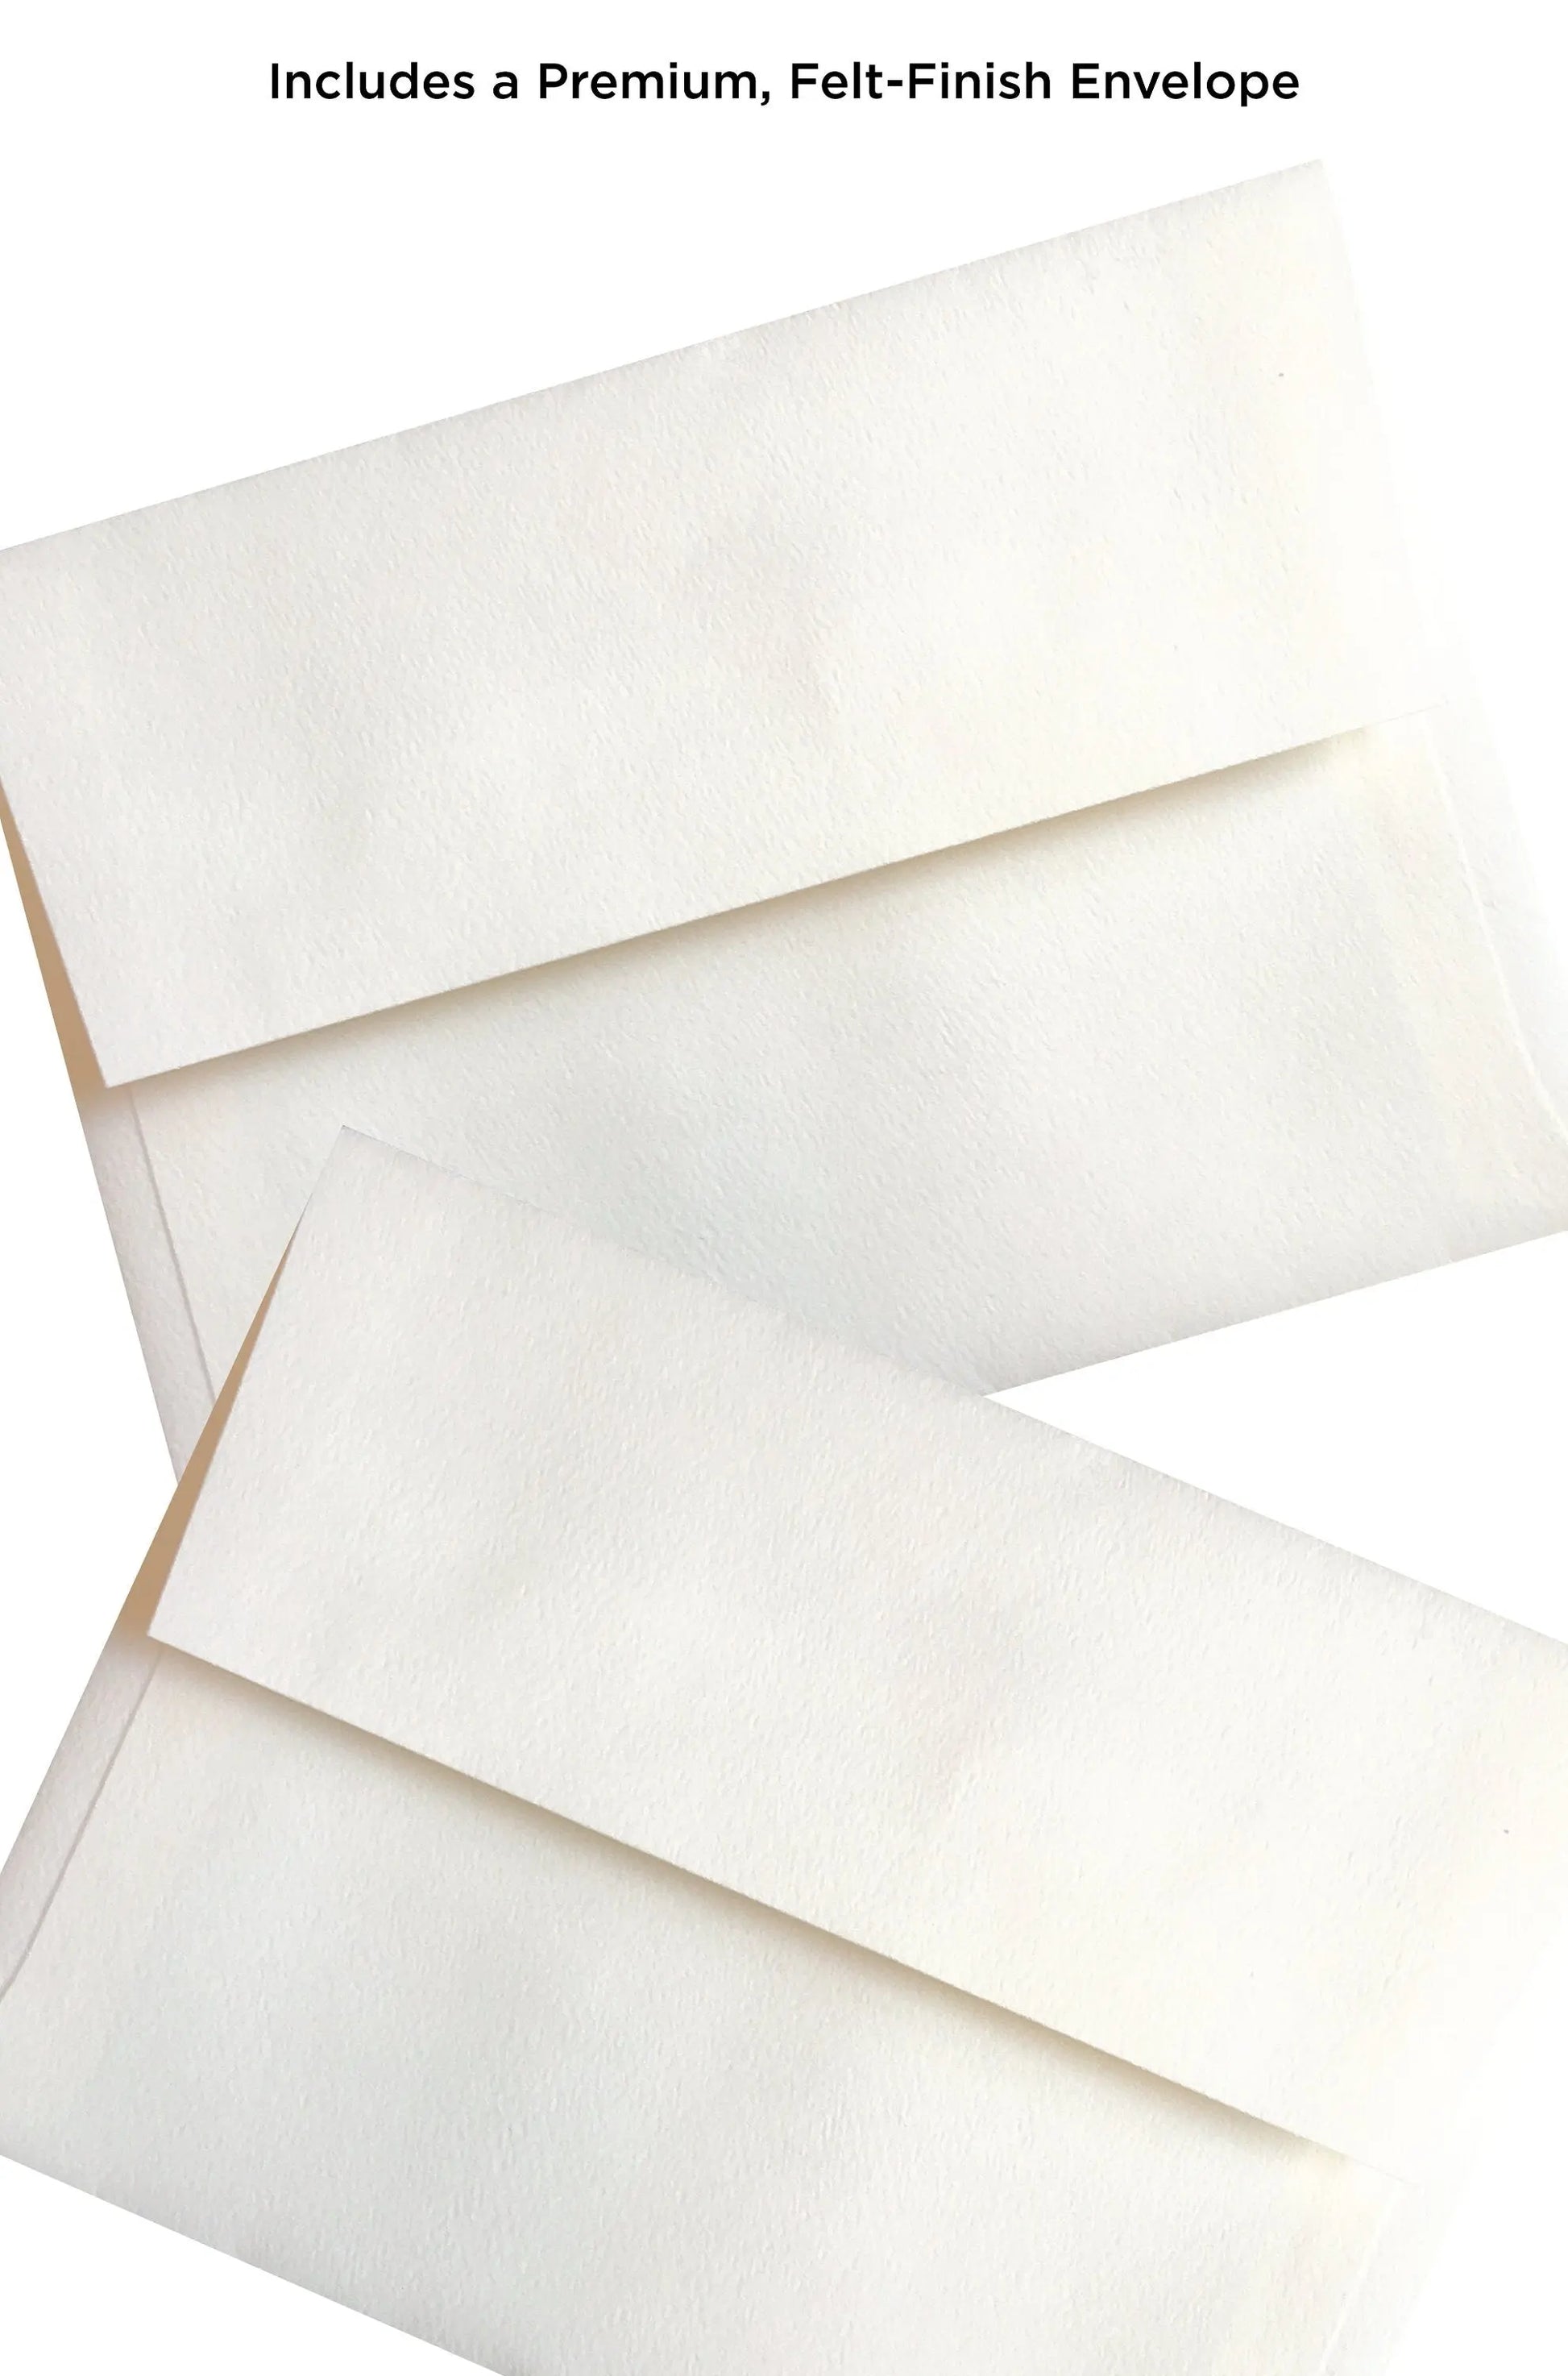 two white envelopes